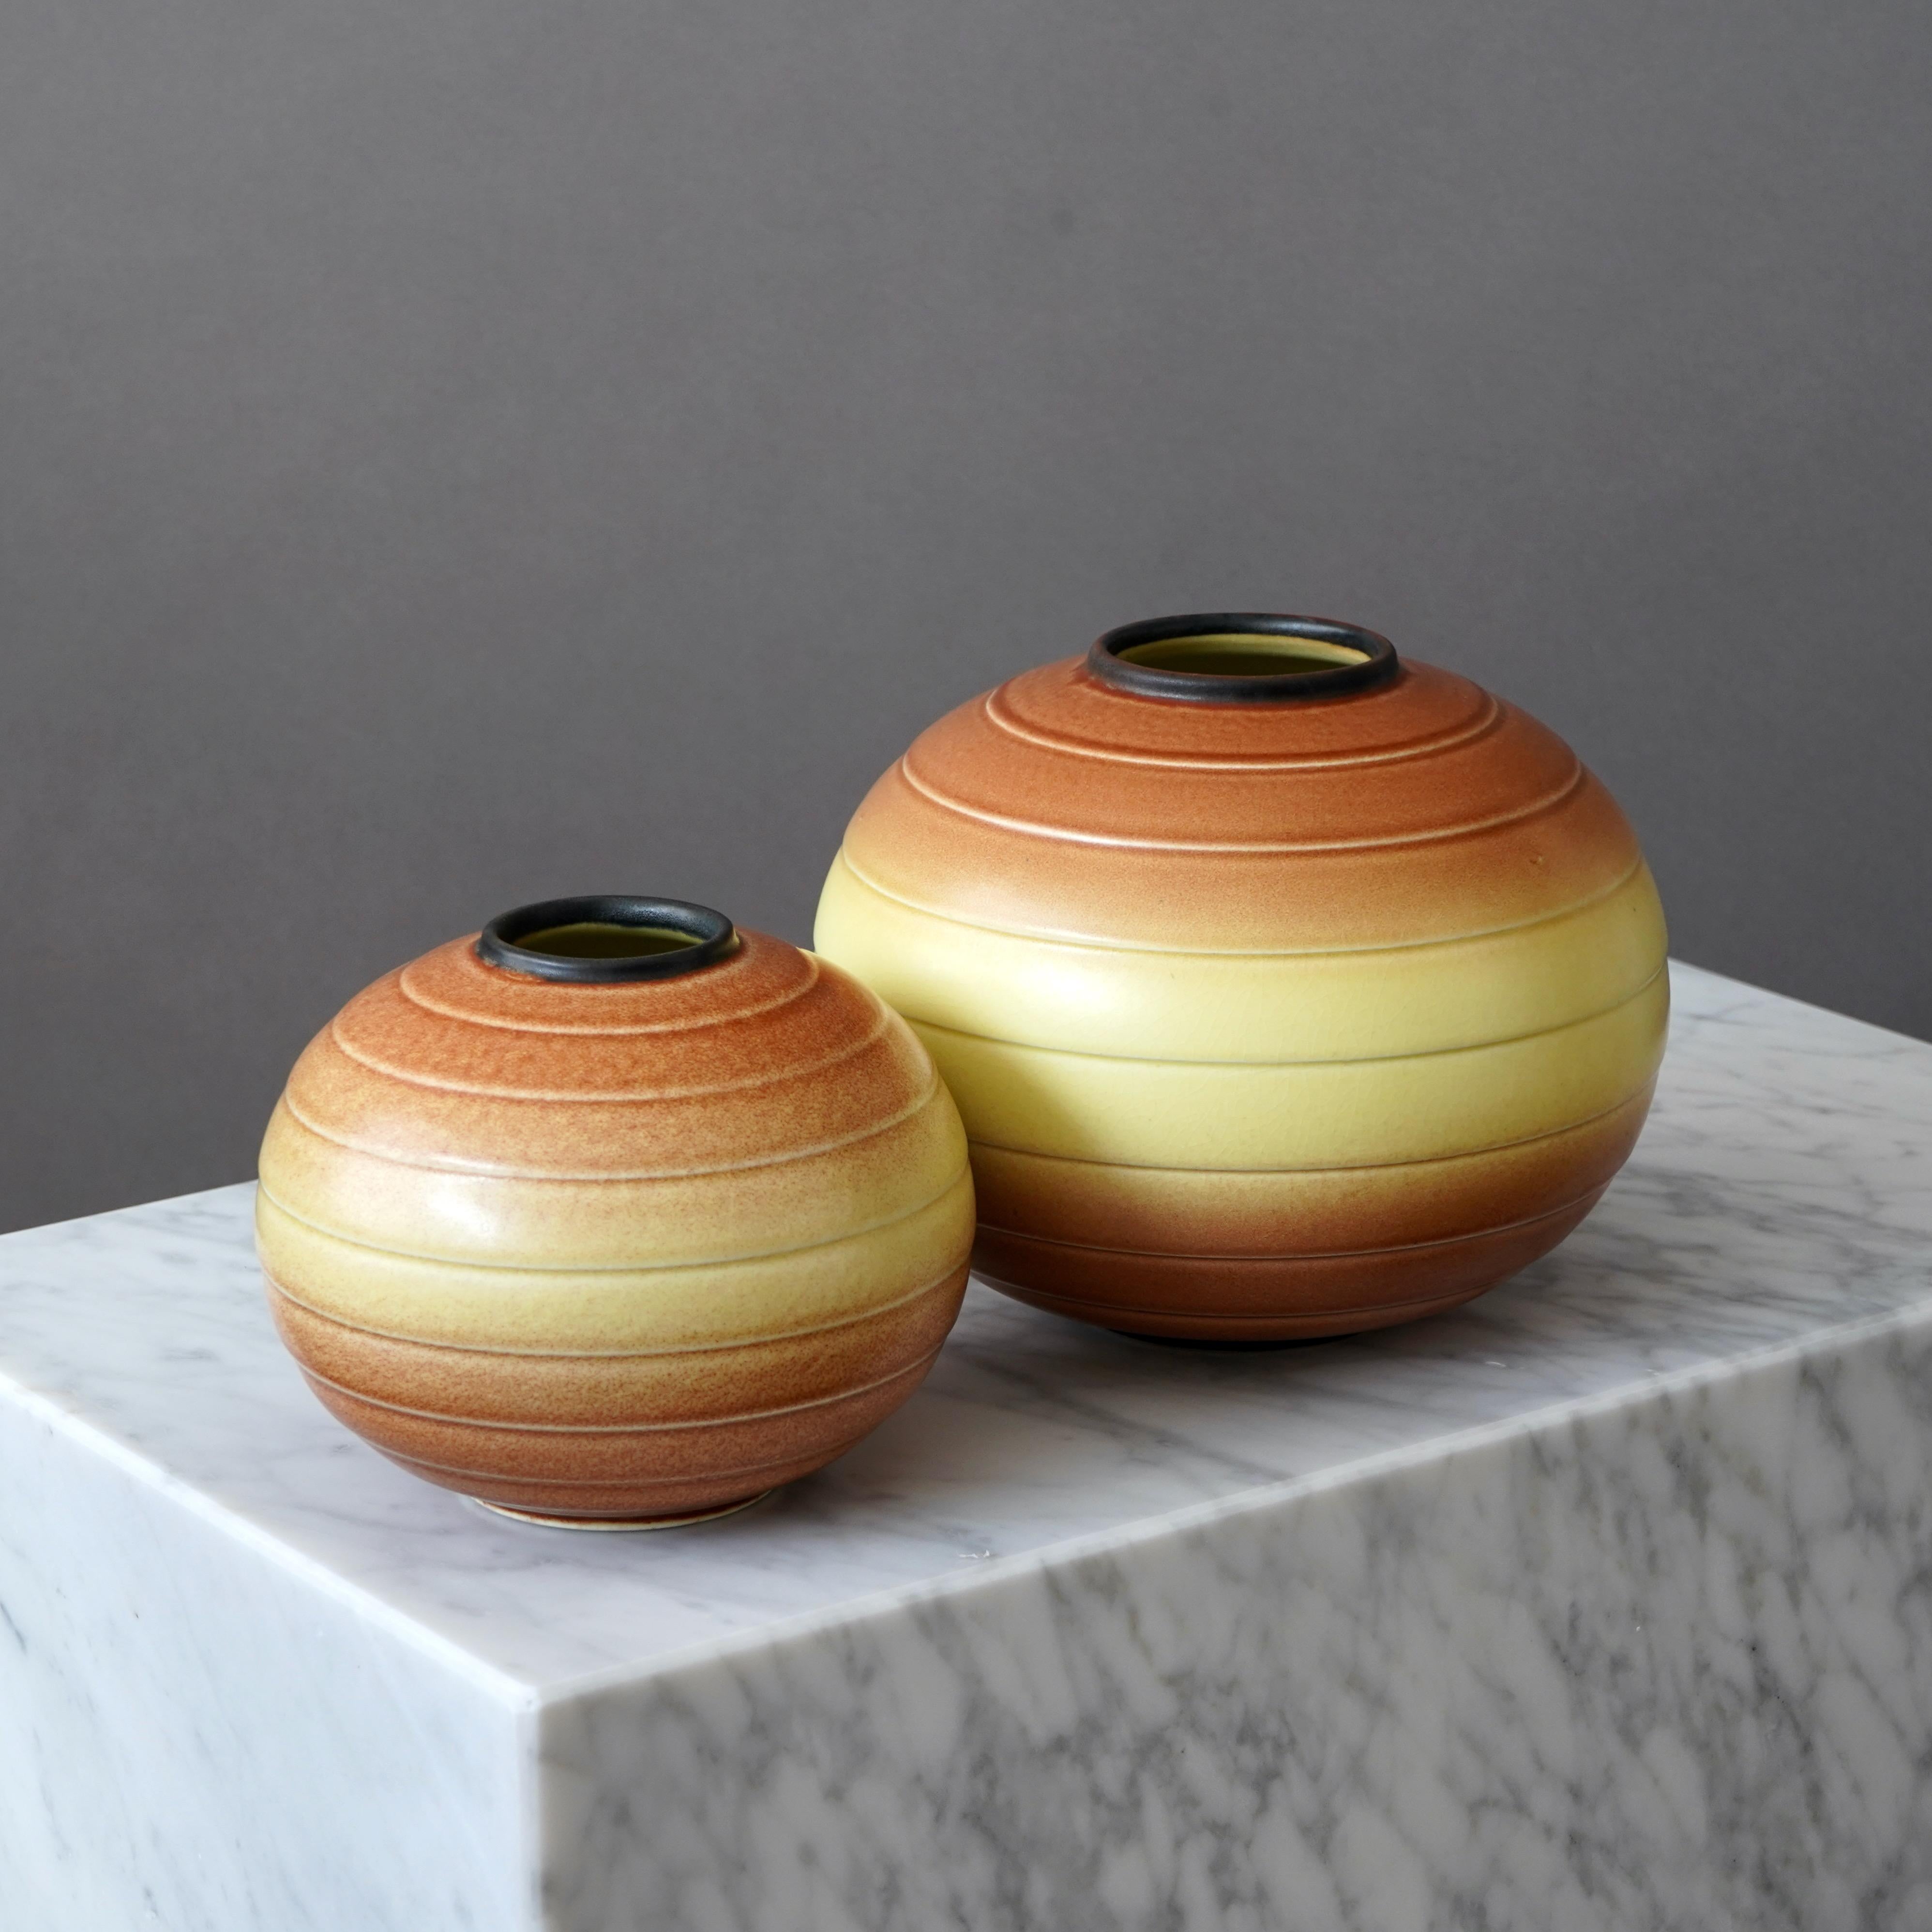 Un ensemble de 2 magnifiques vases en grès Art Déco avec une glaçure étonnante.
Fabriqué par Rörstrand en Suède, années 1930. 

Excellent état. Estampillé 